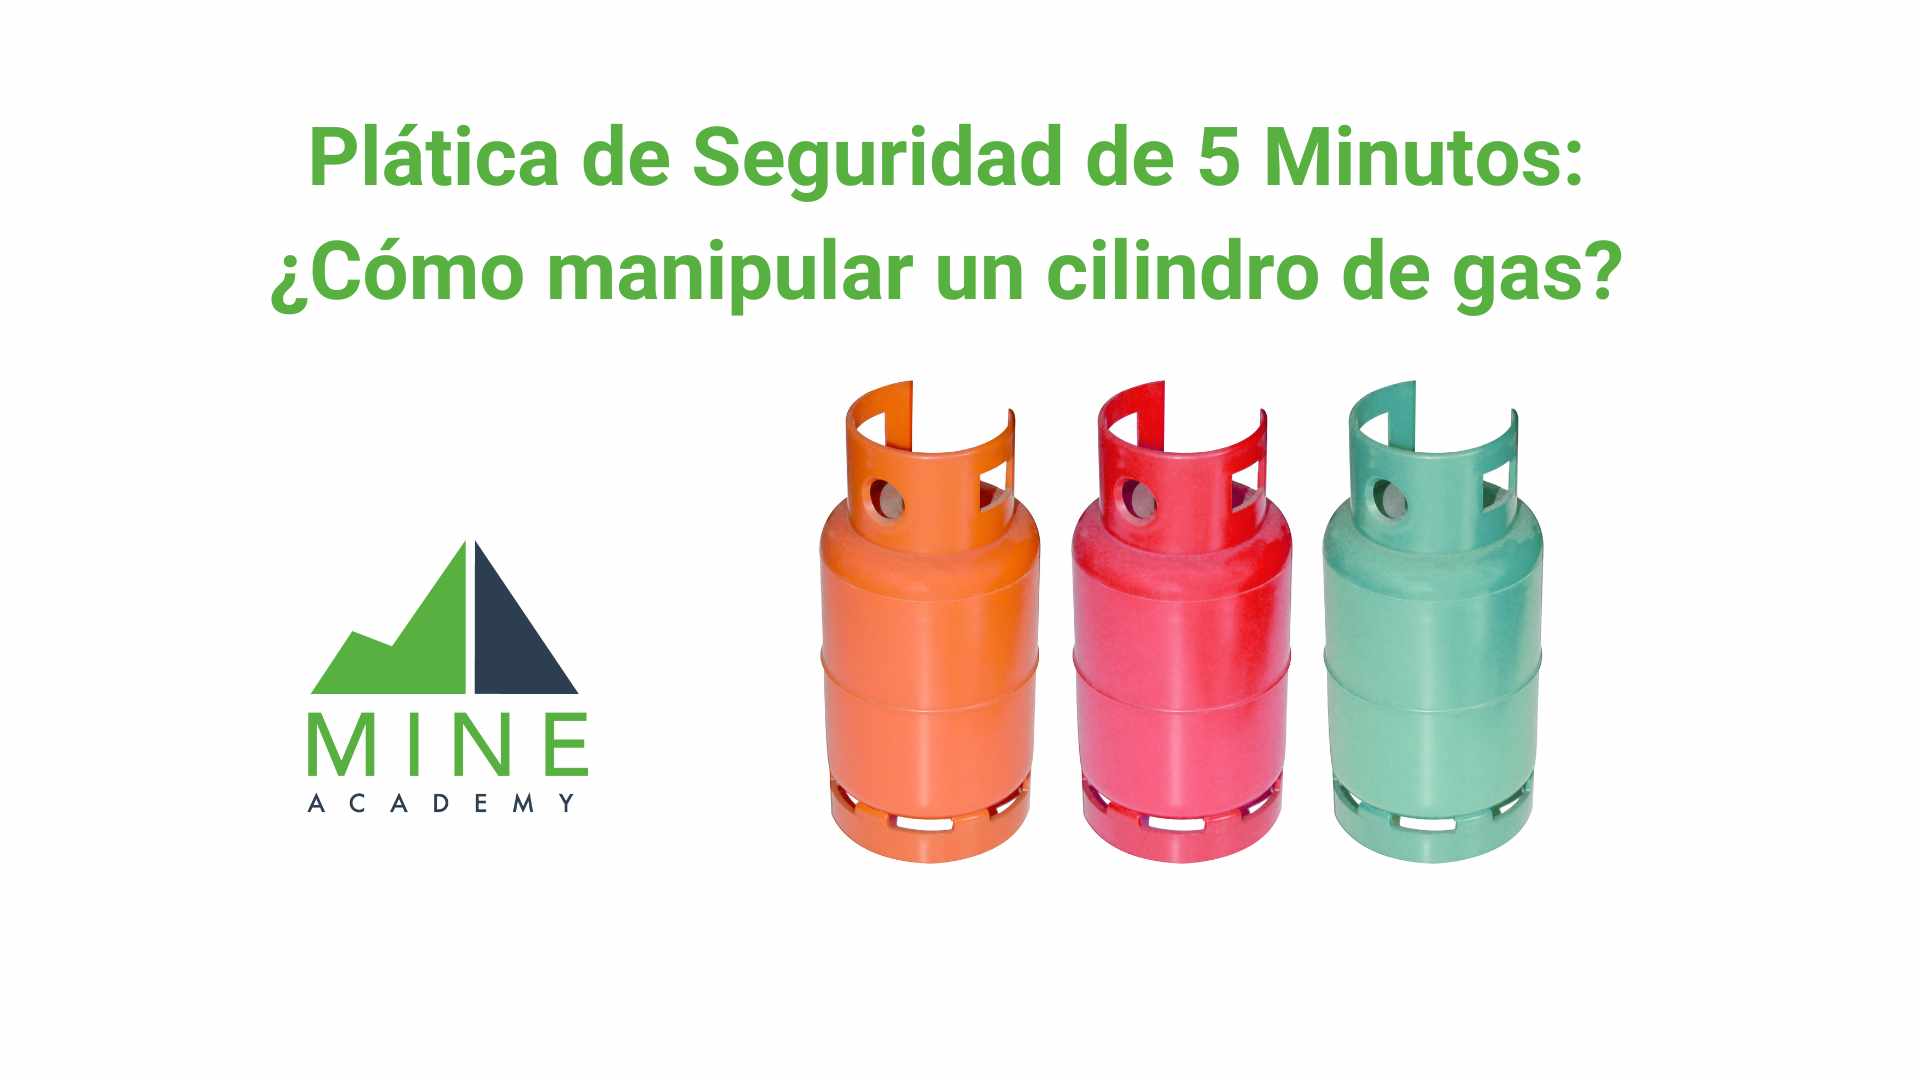 Platica de seguridad de 5 minutos: ¿Cómo manipular un cilindro de gas?